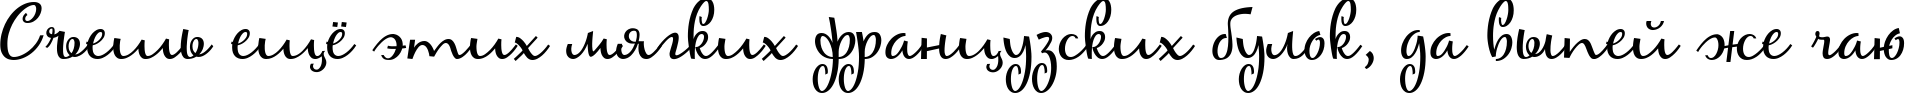 Пример написания шрифтом Maya текста на русском